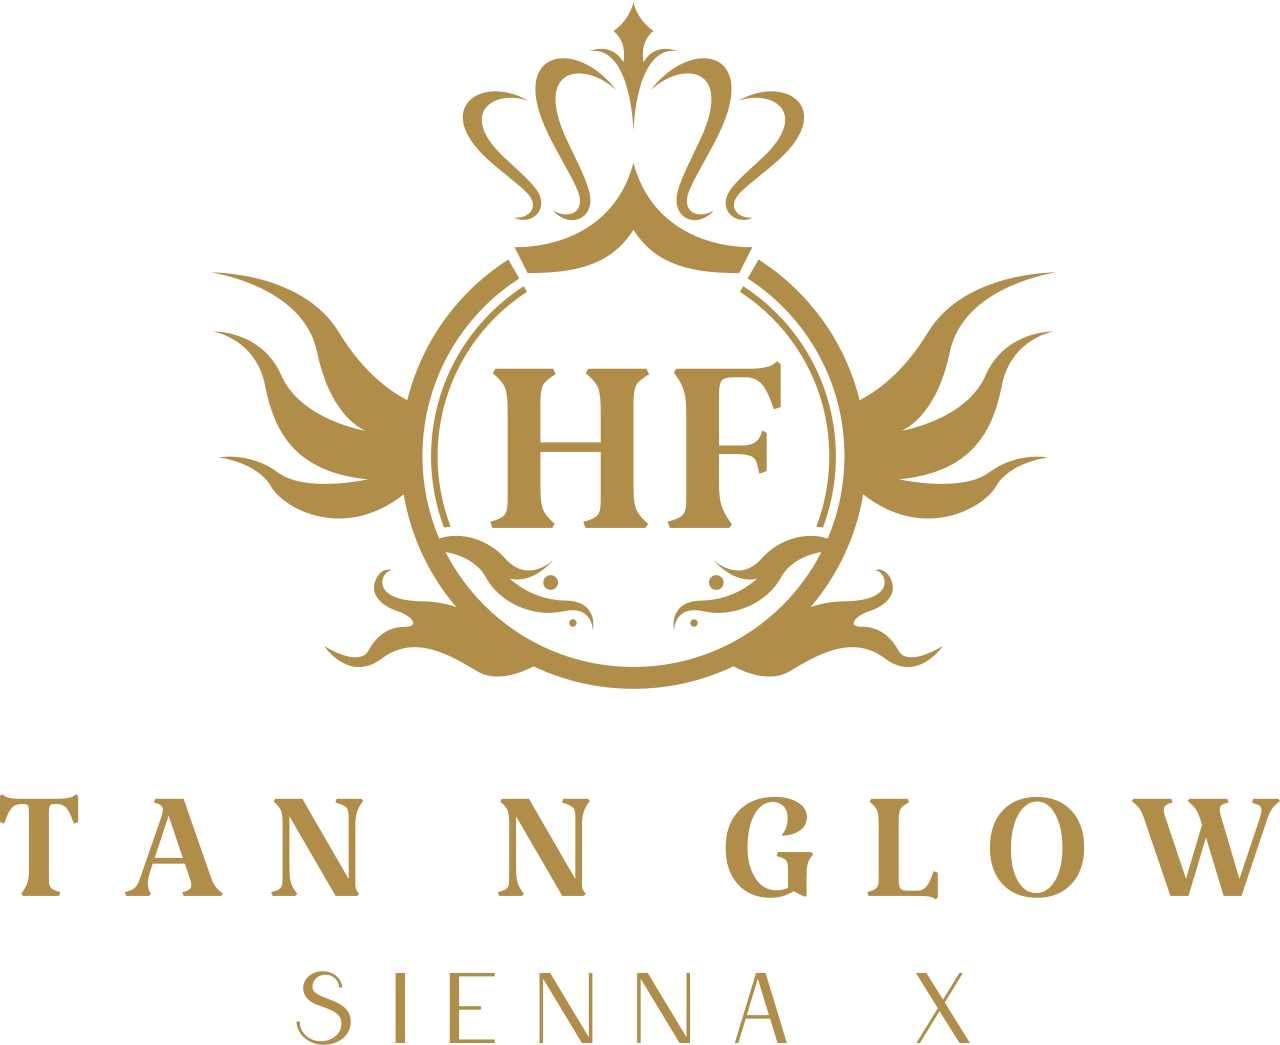 Tan n glow's logo